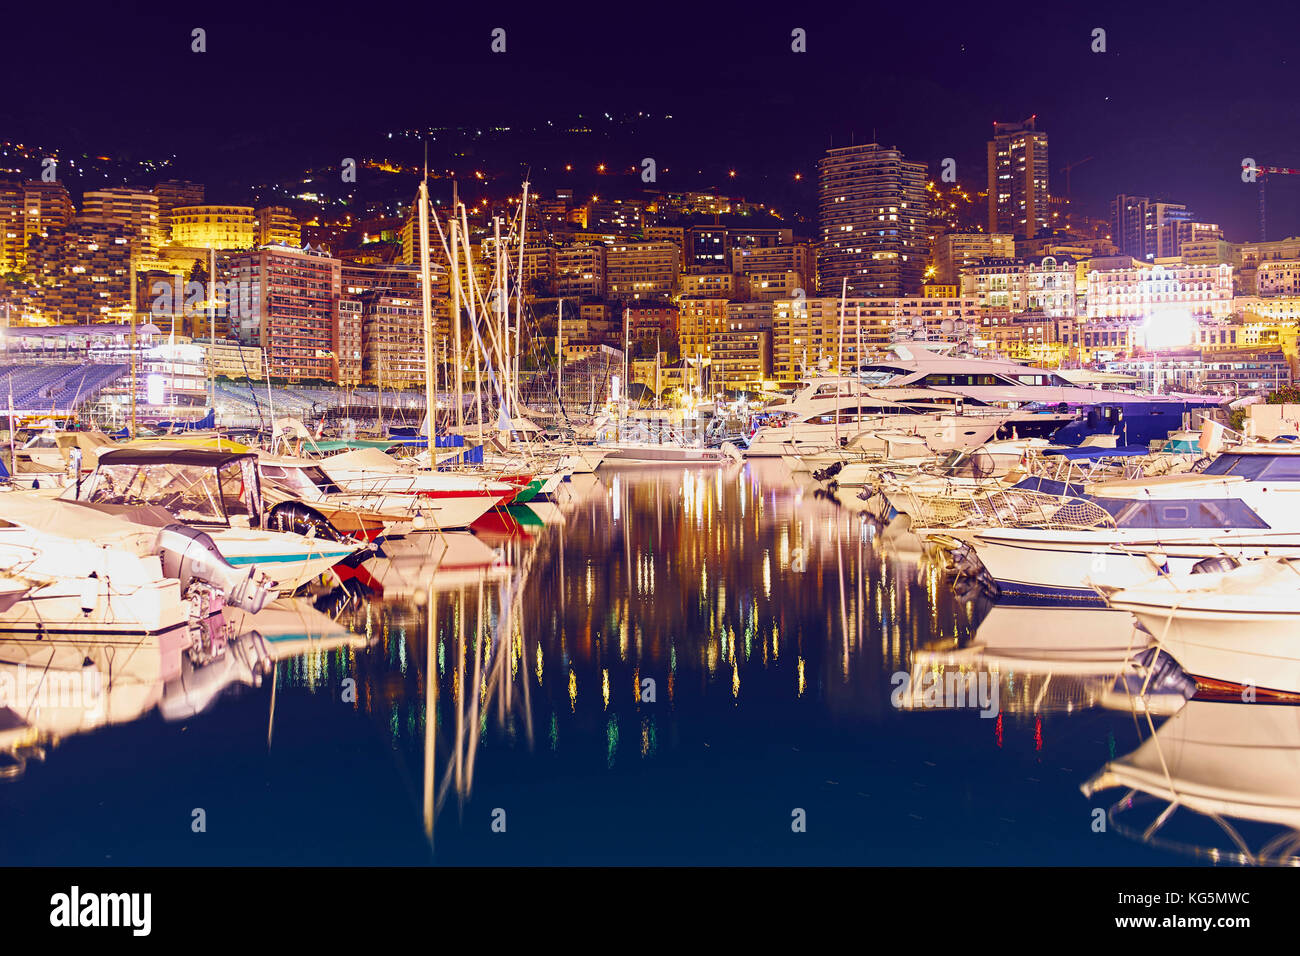 Montecarlo di notte, il principato di Monaco principato di Monaco, cote d'azur, sud della Francia, Europa occidentale, Europa Foto Stock